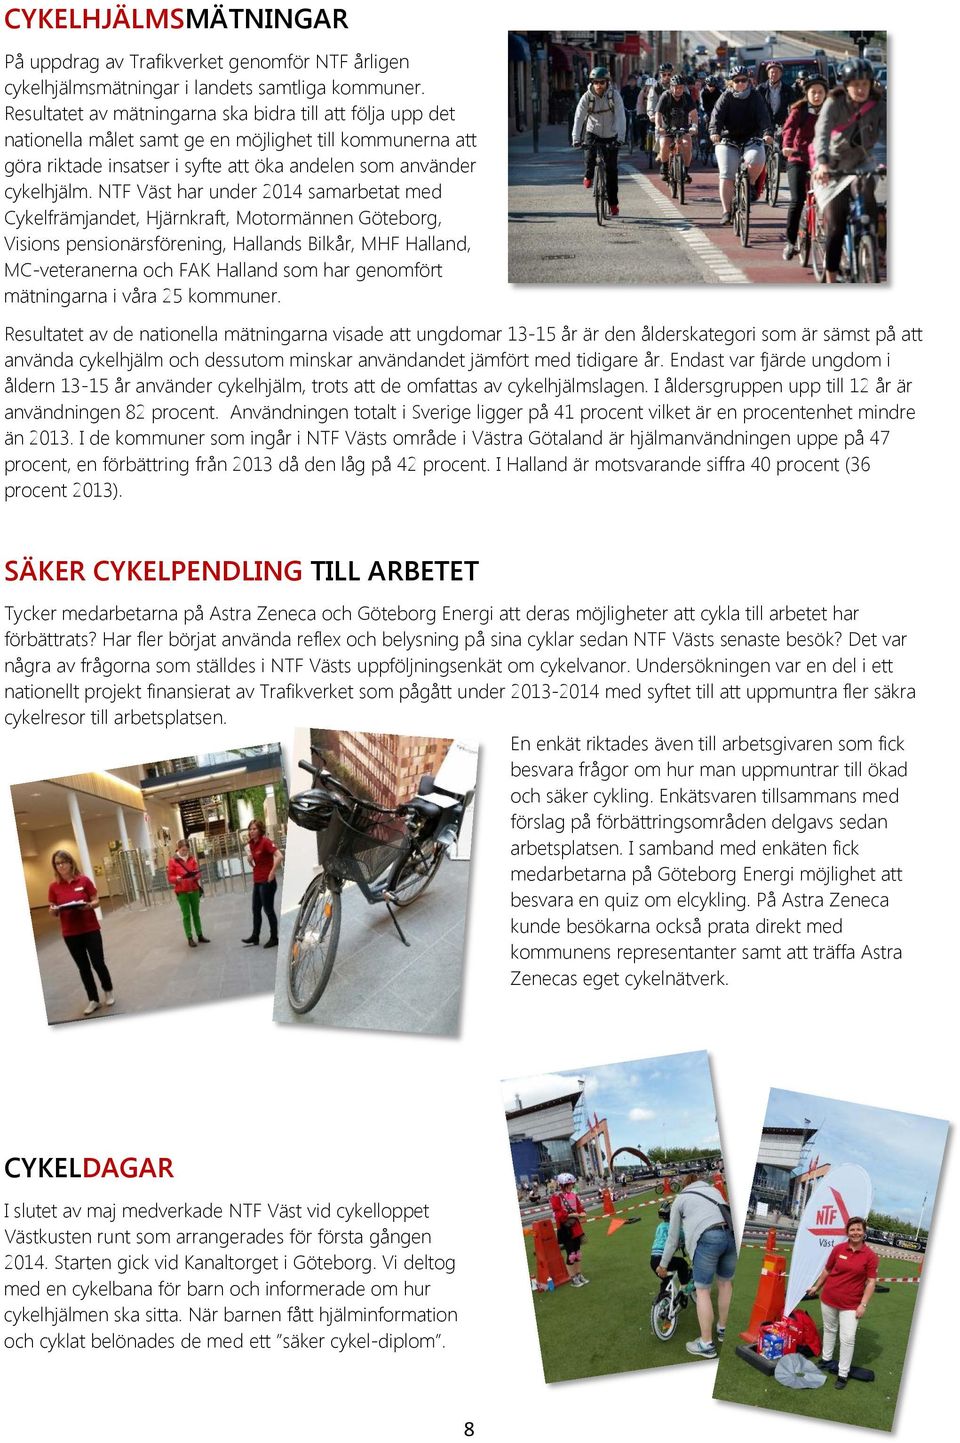 NTF Väst har under 2014 samarbetat med Cykelfrämjandet, Hjärnkraft, Motormännen Göteborg, Visions pensionärsförening, Hallands Bilkår, MHF Halland, MC-veteranerna och FAK Halland som har genomfört